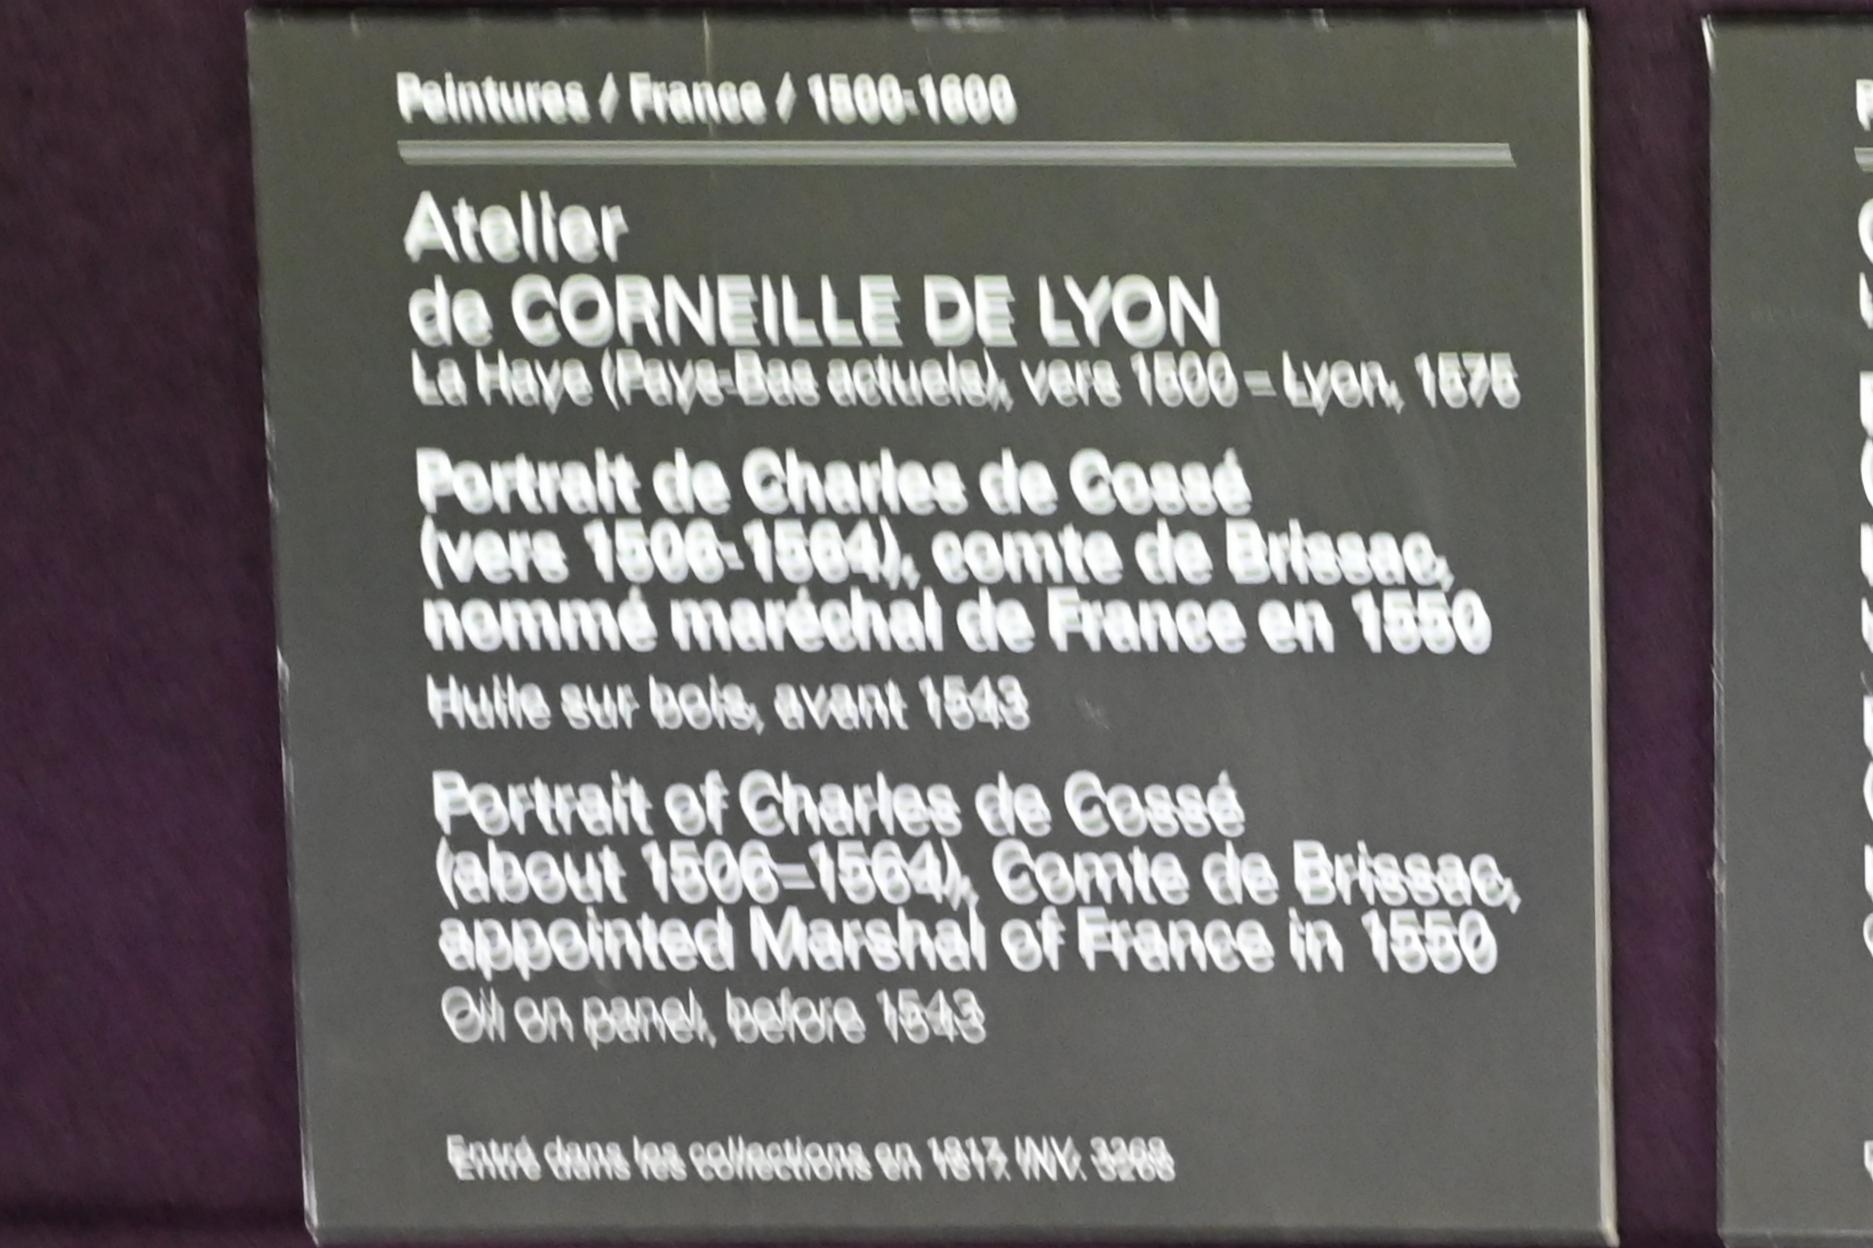 Corneille de Lyon (Werkstatt) (1536–1560), Porträt des Charles de Cossé (ca. 1506-1564), Graf von Brissae, 1550 zum Marschall von Frankreich ernannt, Paris, Musée du Louvre, Saal 822, um 1543, Bild 2/2